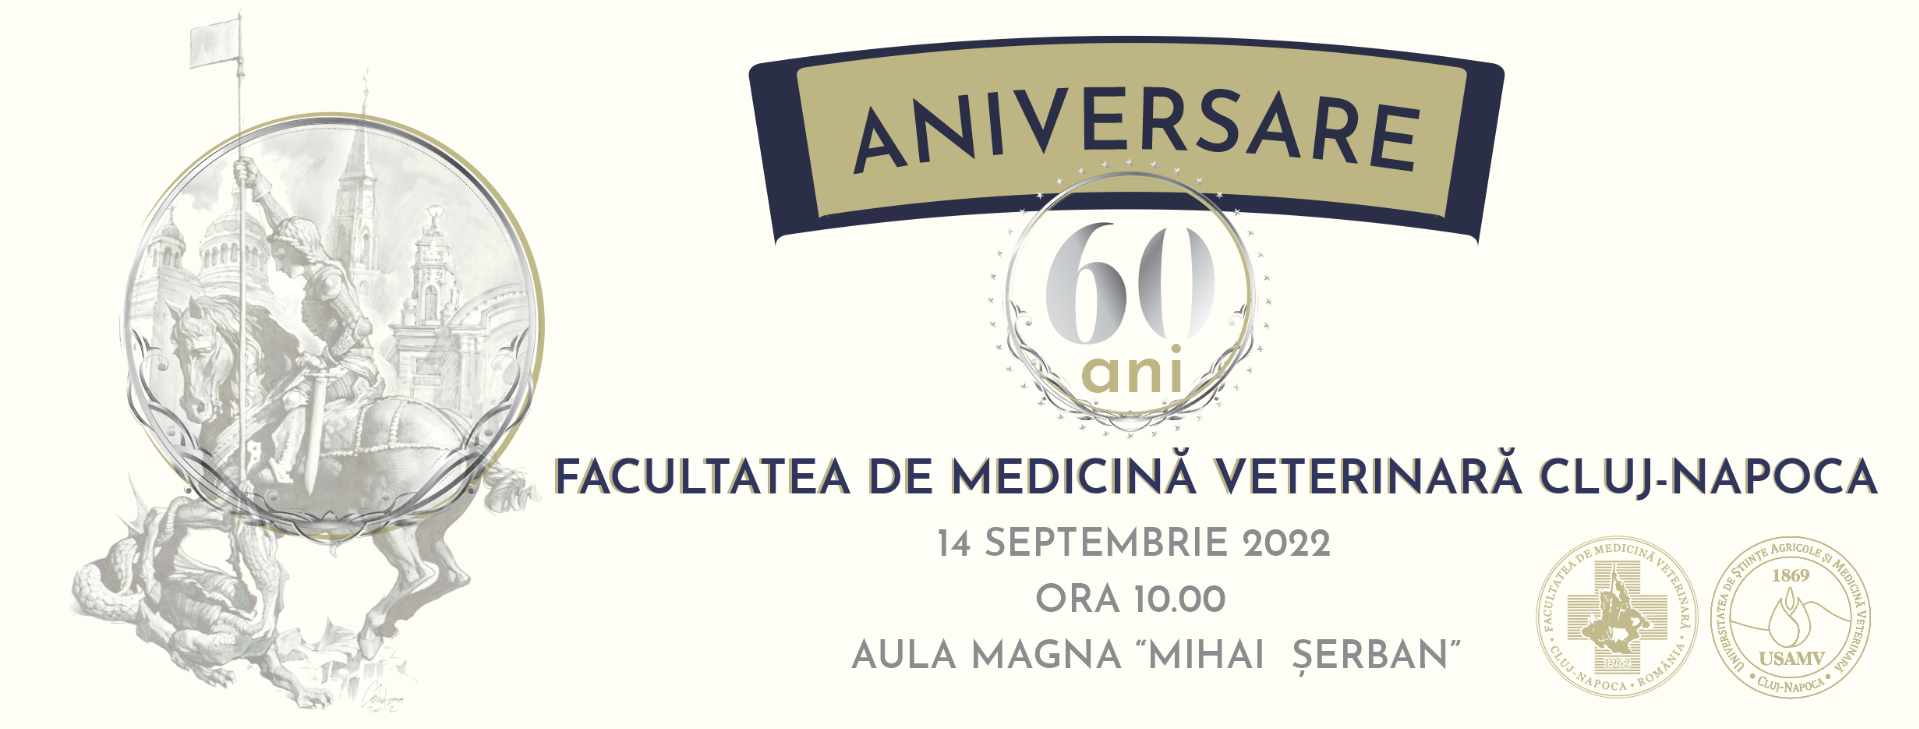 USAMV Cluj-Napoca: Facultatea de Medicină Veterinară aniversează 60 de ani